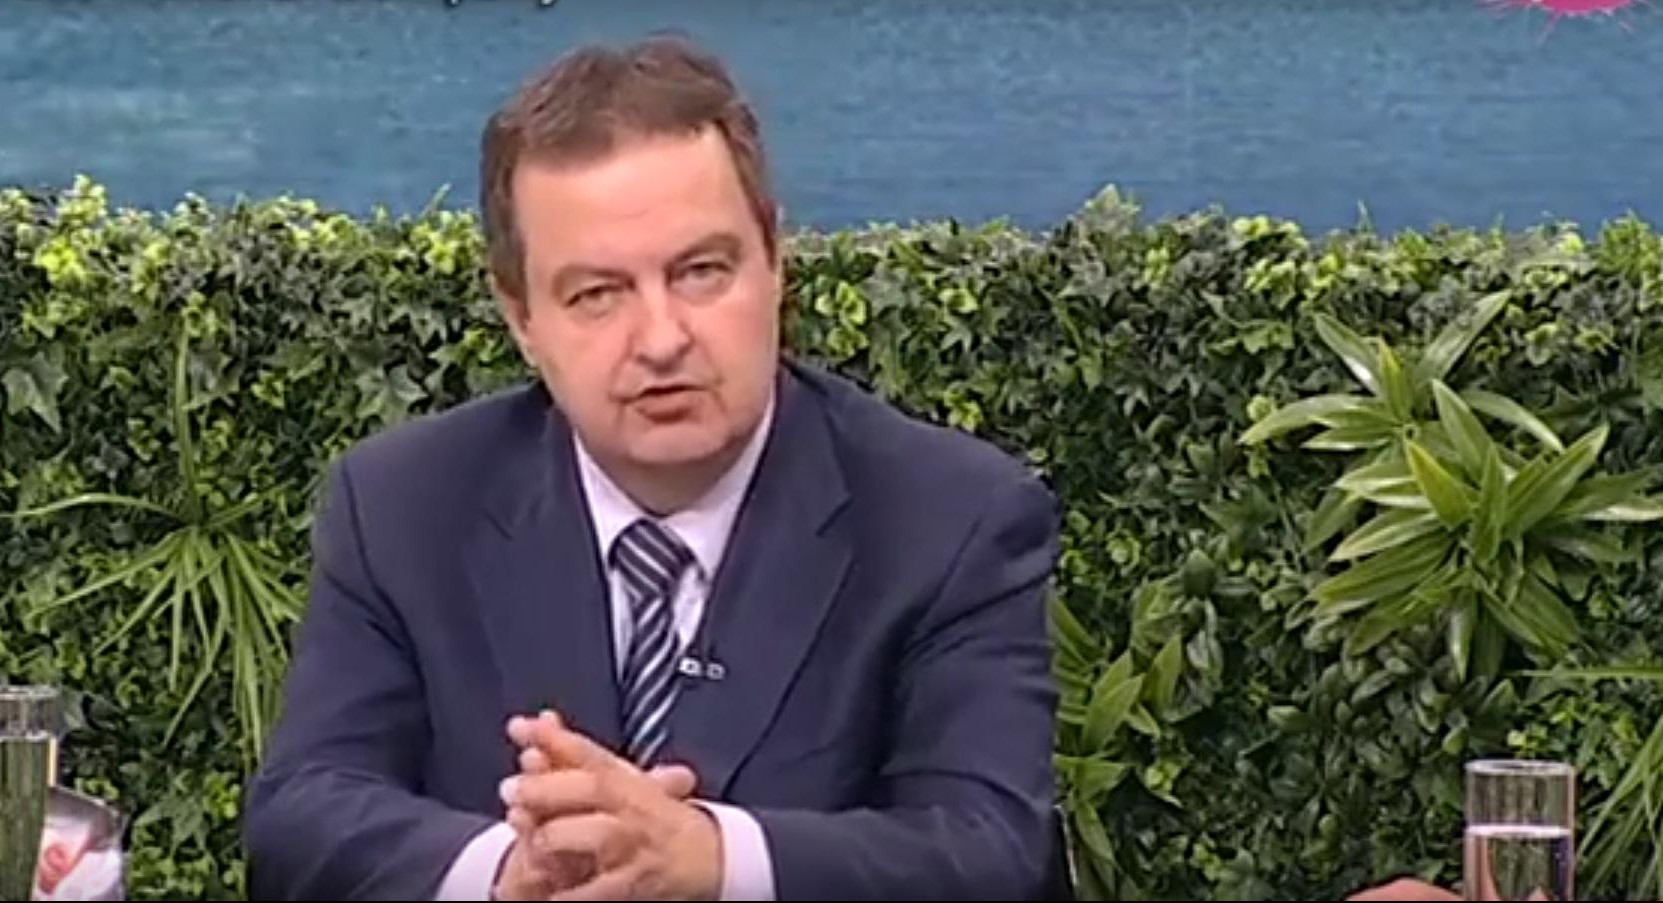 (VIDEO) DAČIĆ POSLAO JASNU PORUKU: Srbija neće prihvatiti jednostranu nezavisnost Kosova - OVO JE BORBA DAVIDA I GOLIJATA, ALI NEĆEMO SE PREDATI!